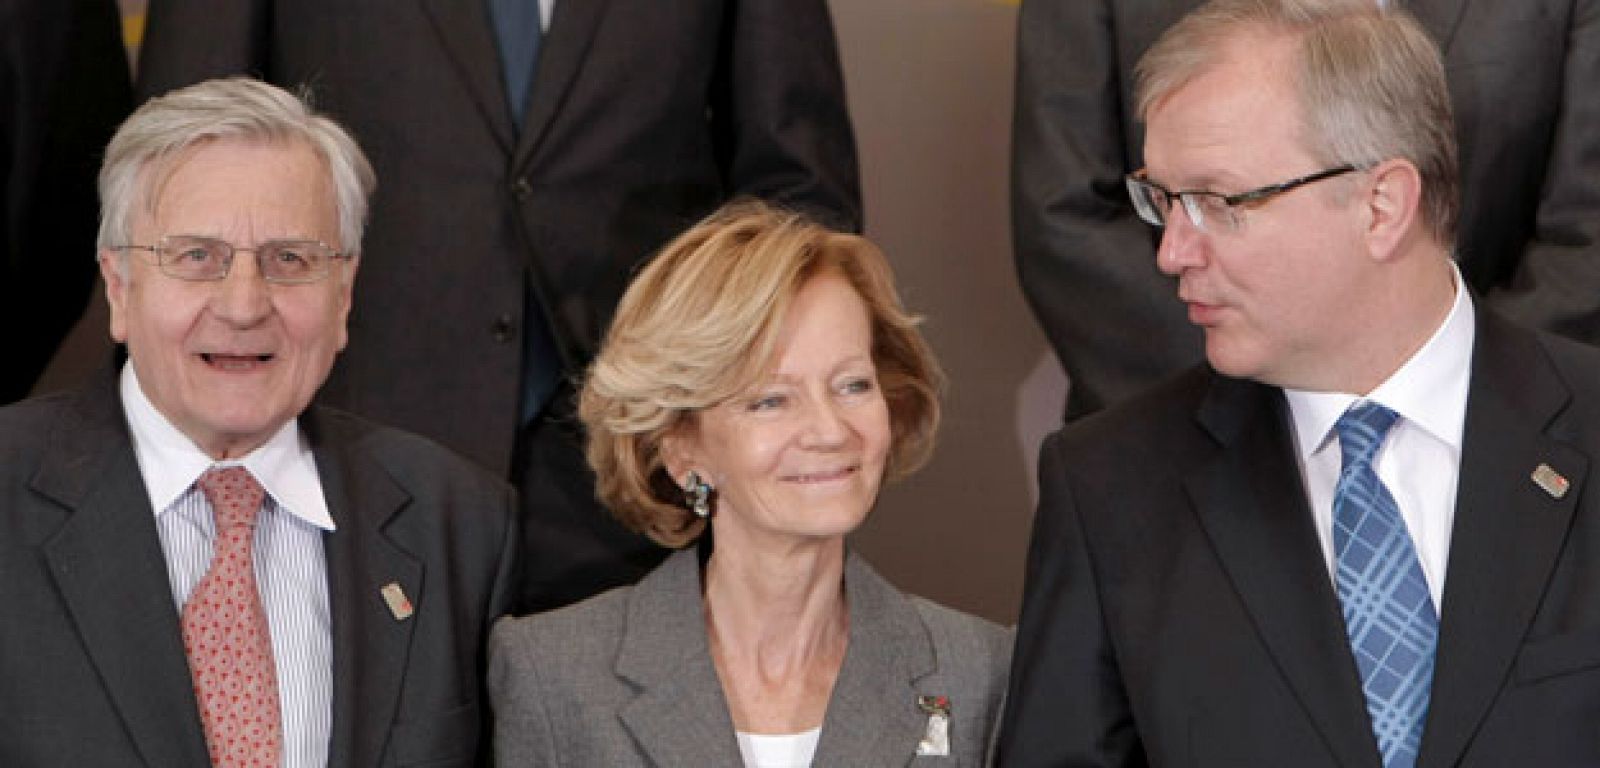 La vicepresidenta del Gobierno, Elena Salgado, entre el presidente del BCE, Jean-Claude Trichet, y el comisario de Asuntos Económicos y Monetarios, Olli Rehn.